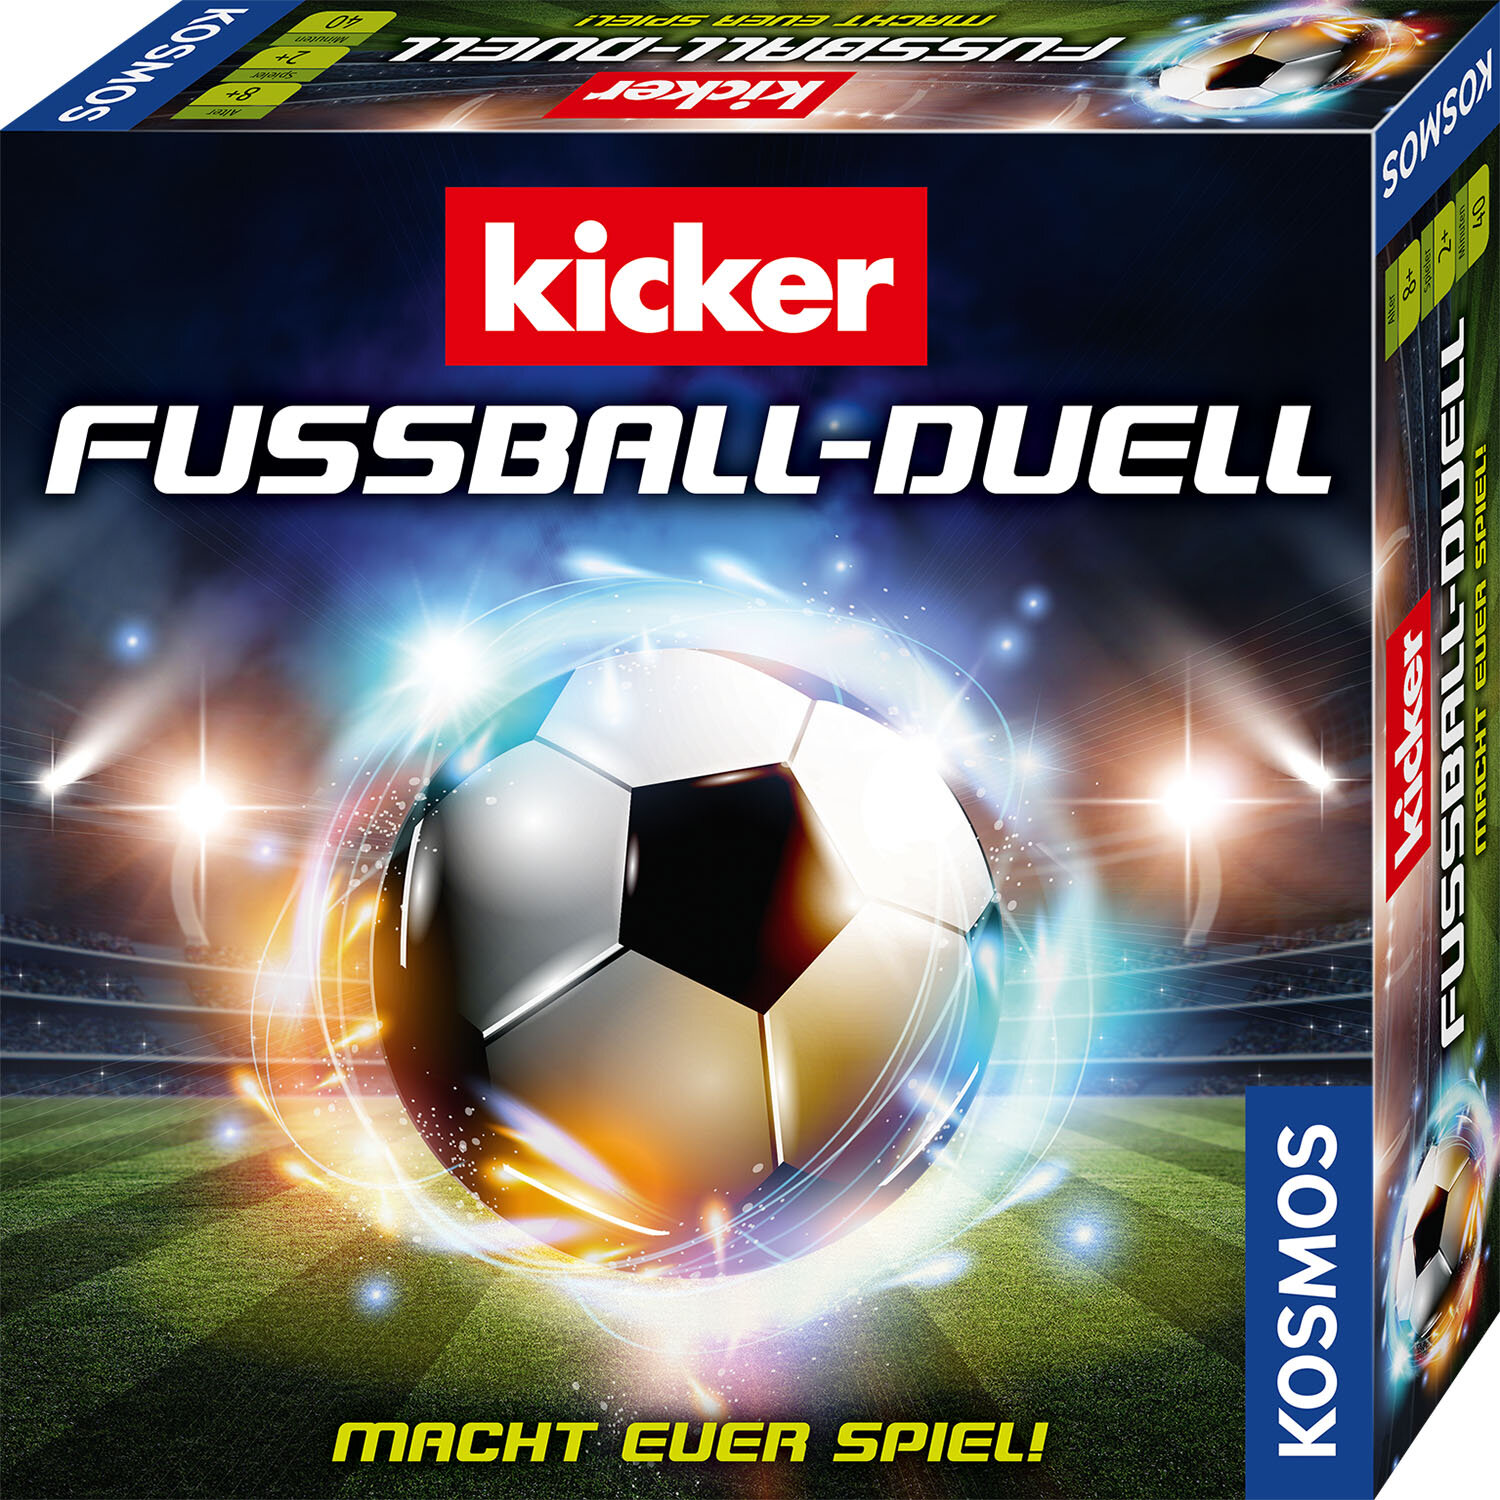 Kicker Fußball-Duell